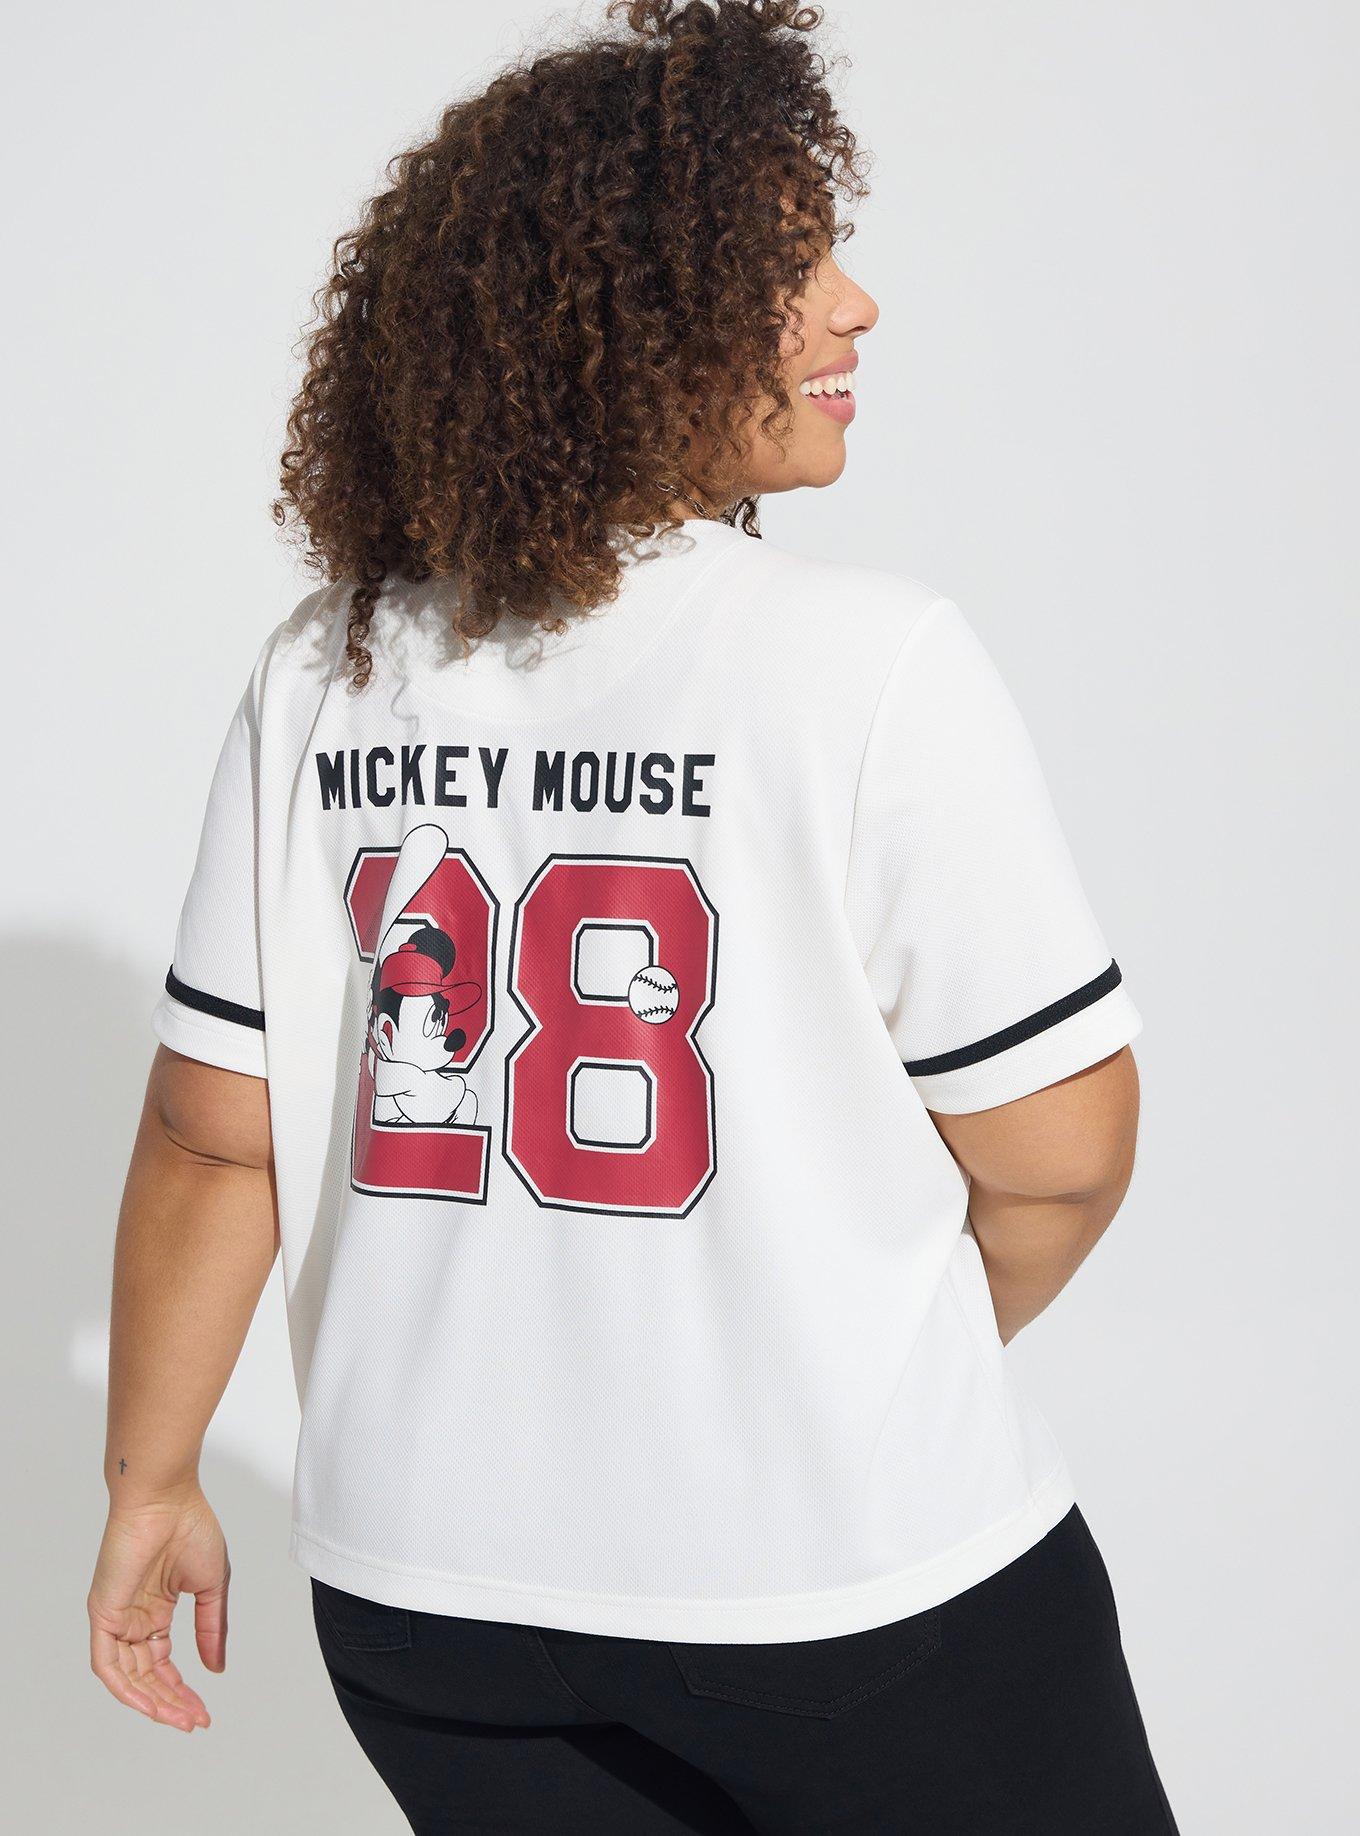 Women's Plus Size Disney Mickey Mouse Baseball Jersey 28 Shirt White Button  Down